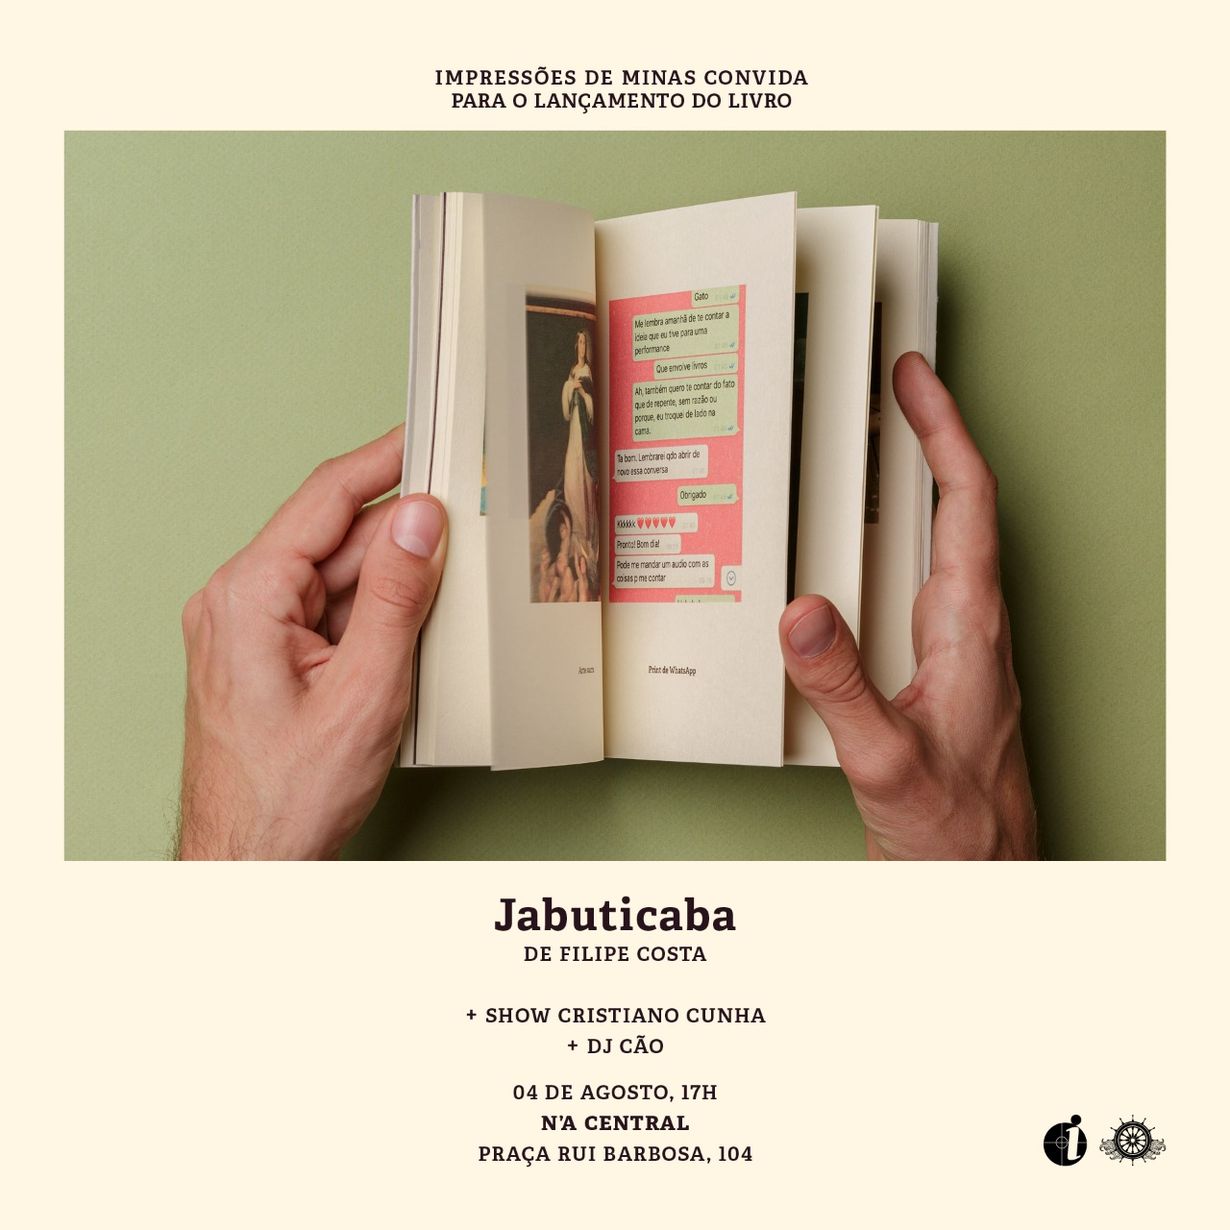 Jabuticaba, de Filipe Costa – Impressões de Minas